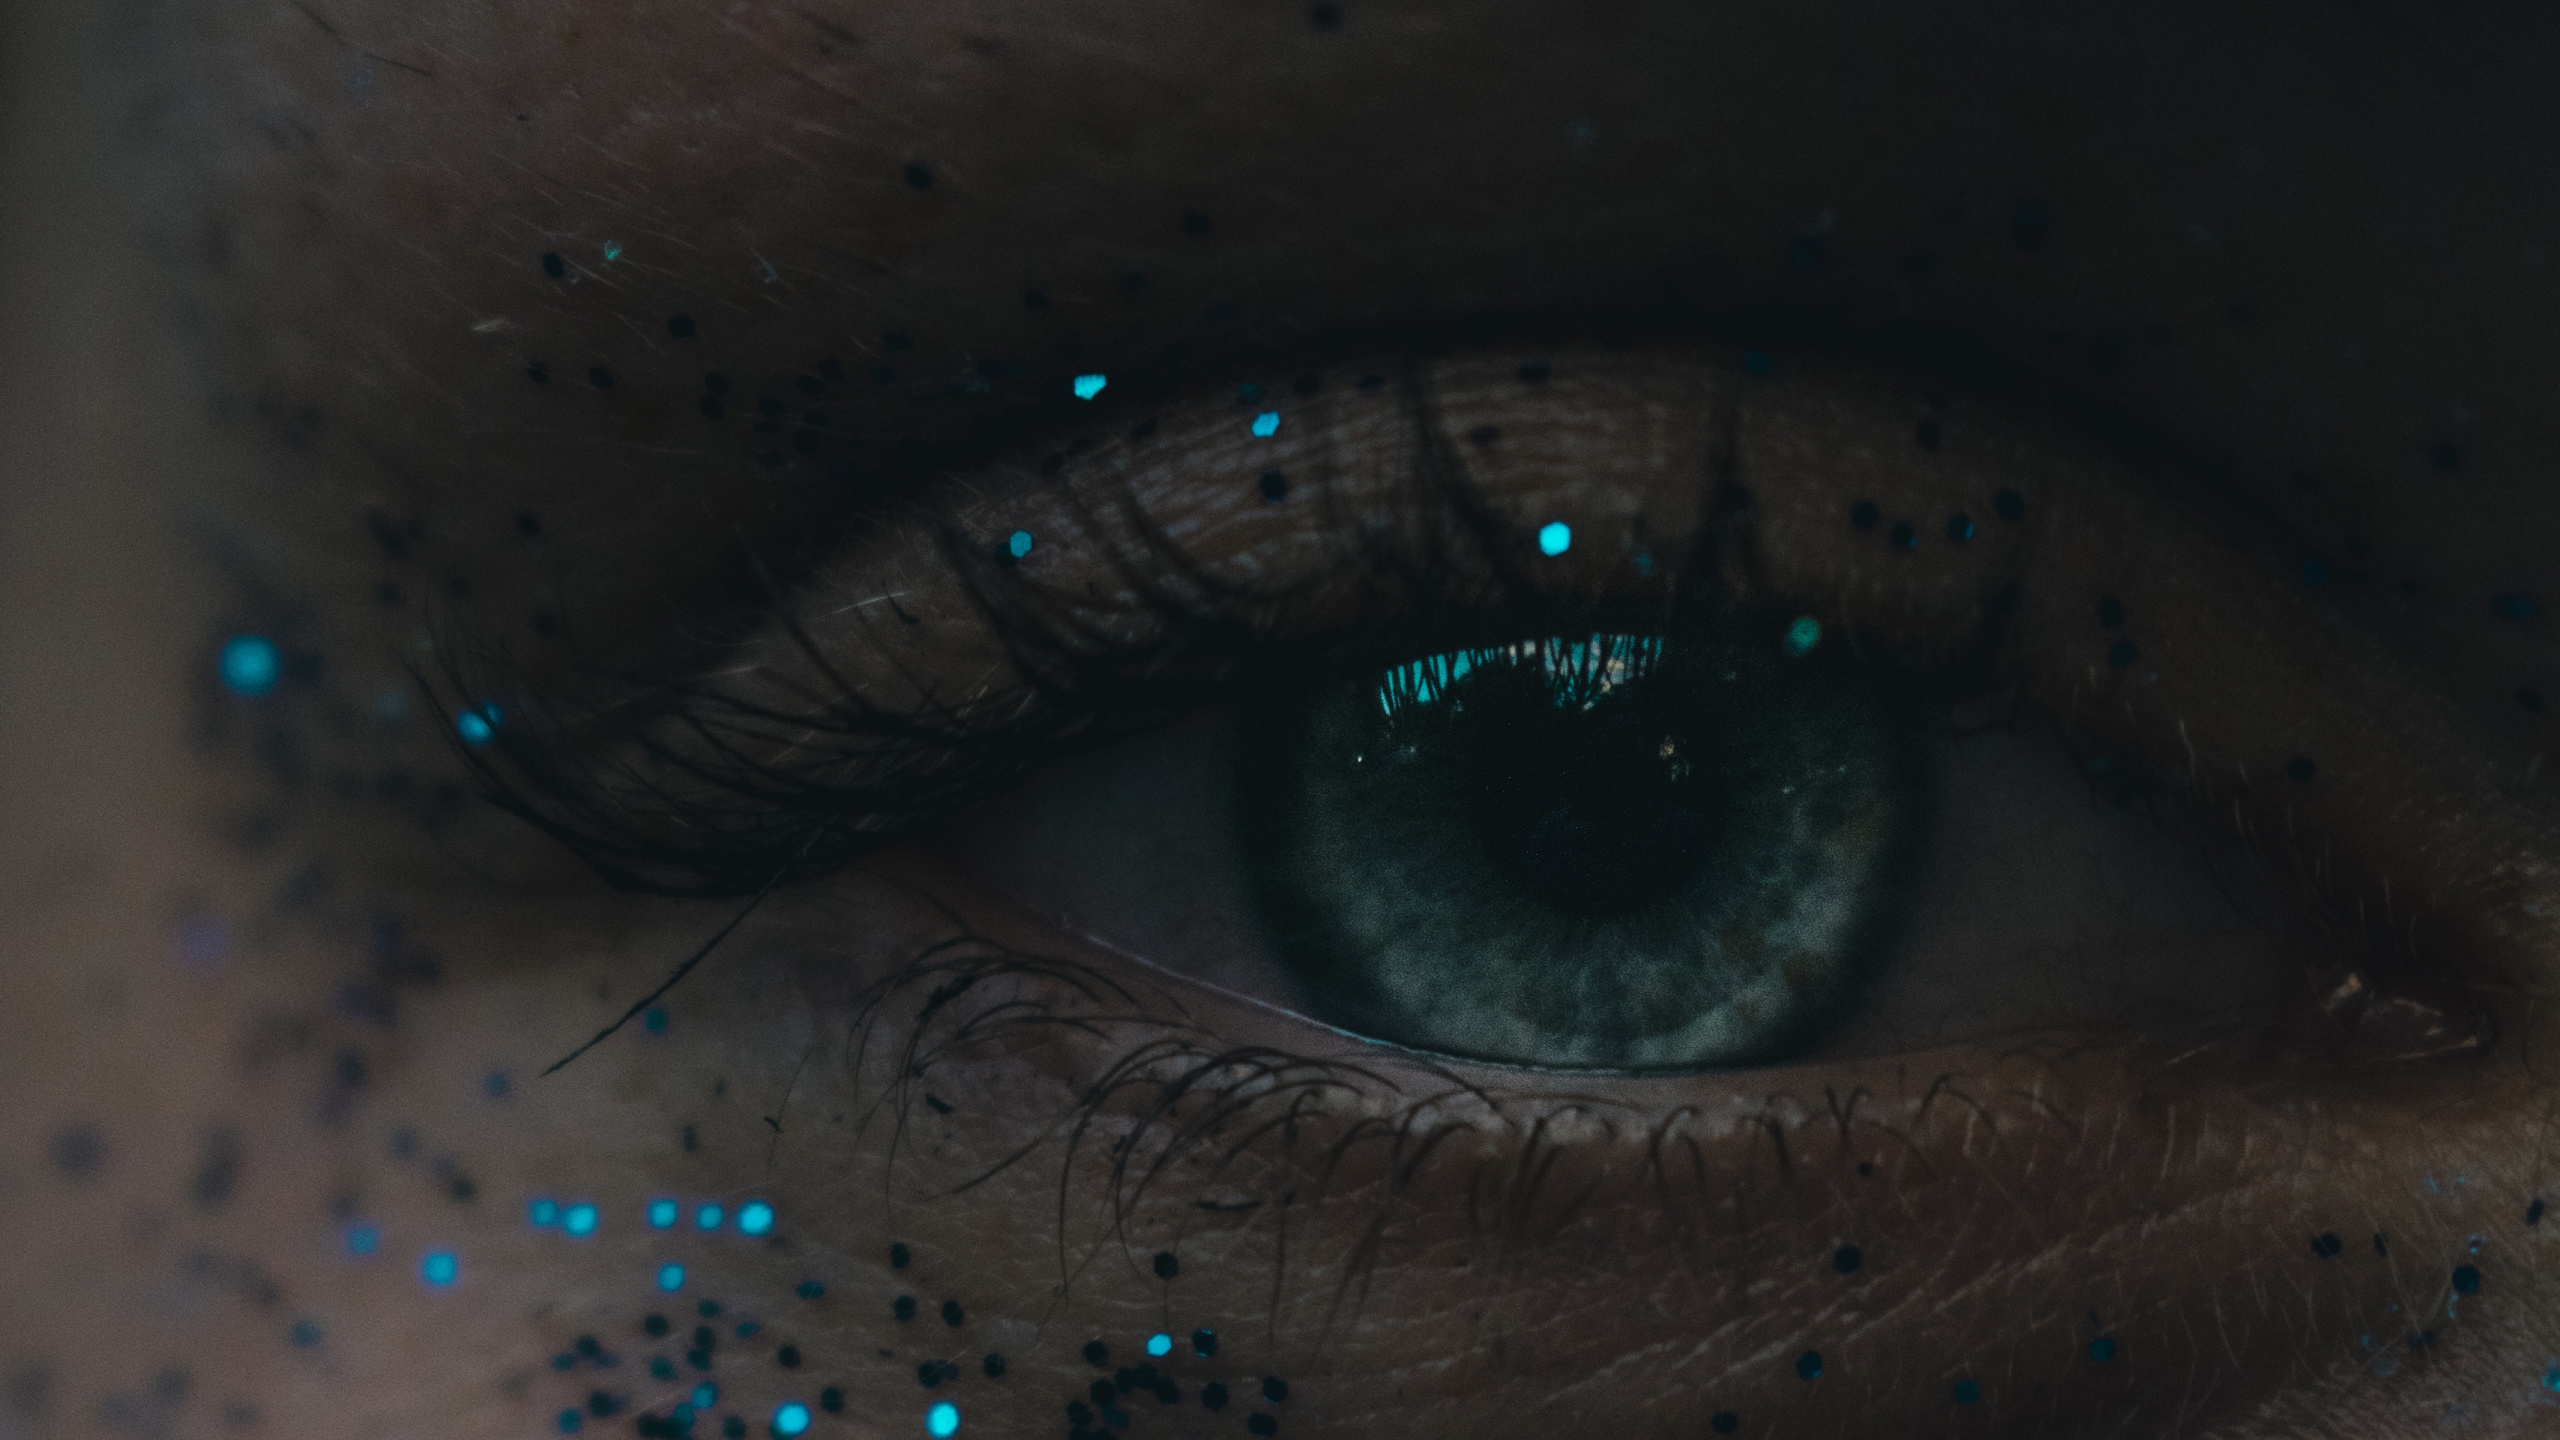 Personen Auge Mit Blauen Augen. Wallpaper in 2560x1440 Resolution